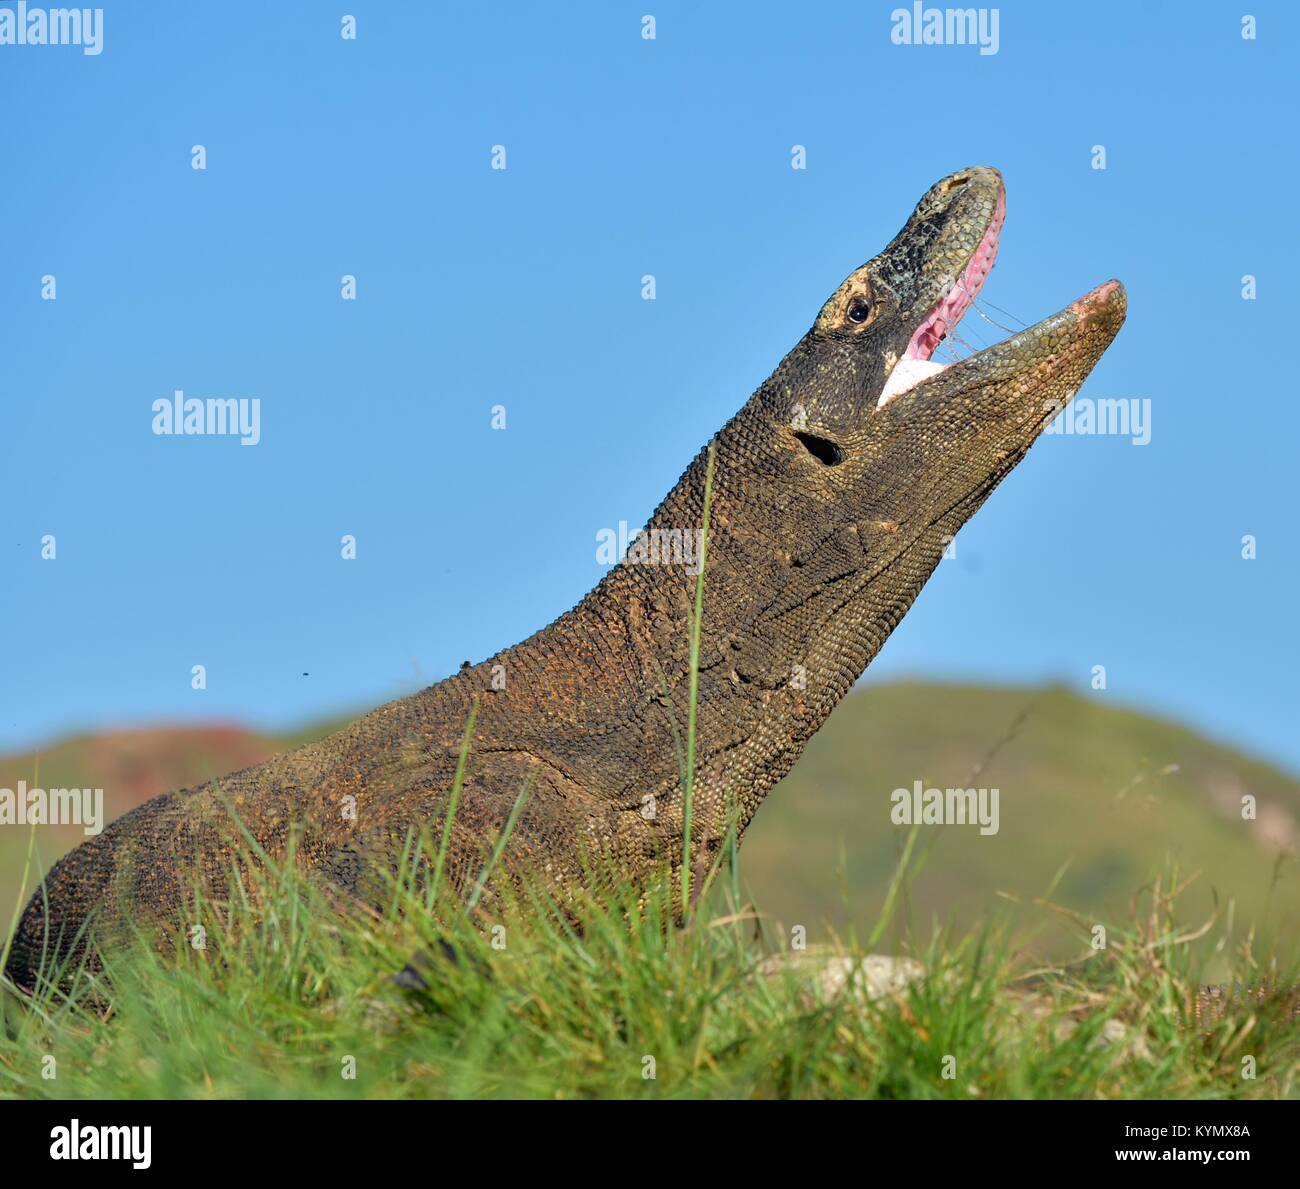 Il drago di Komodo (Varanus komodoensis ) ha sollevato la testa e ha aperto una bocca. È la più grande lucertola vivente nel mondo. Isola Rinca. Indonesia. Foto Stock